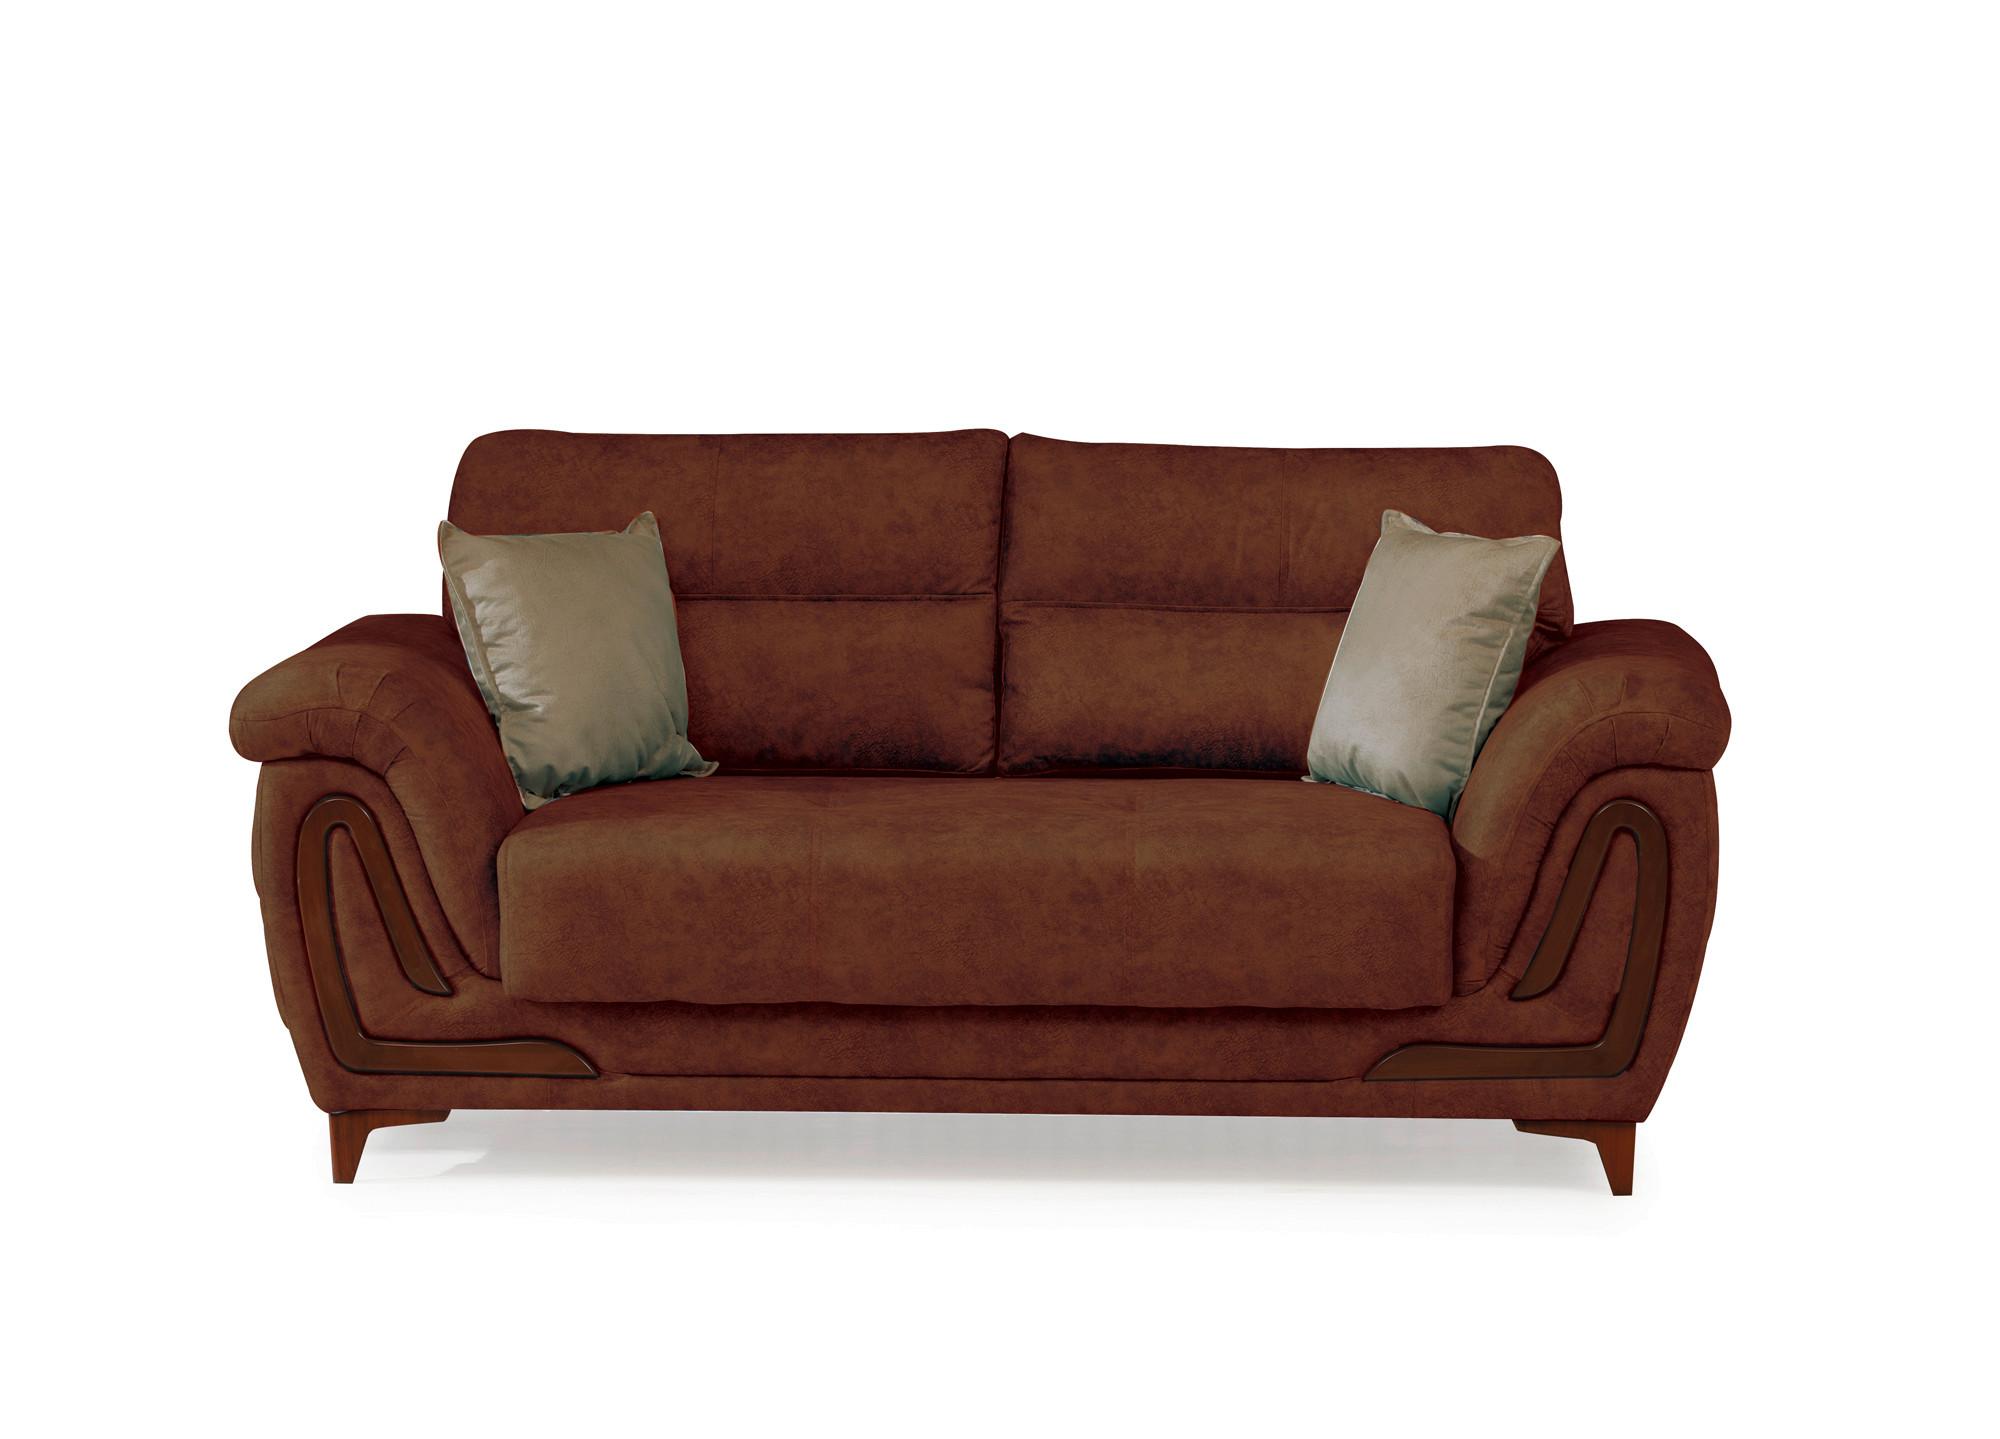 2-Sitzer-Sofa Alfa Mit Stauraum Webstoff Kupfer - Dunkelbraun/Kupferfarben, Design, Textil (191/87/98cm) - Livetastic